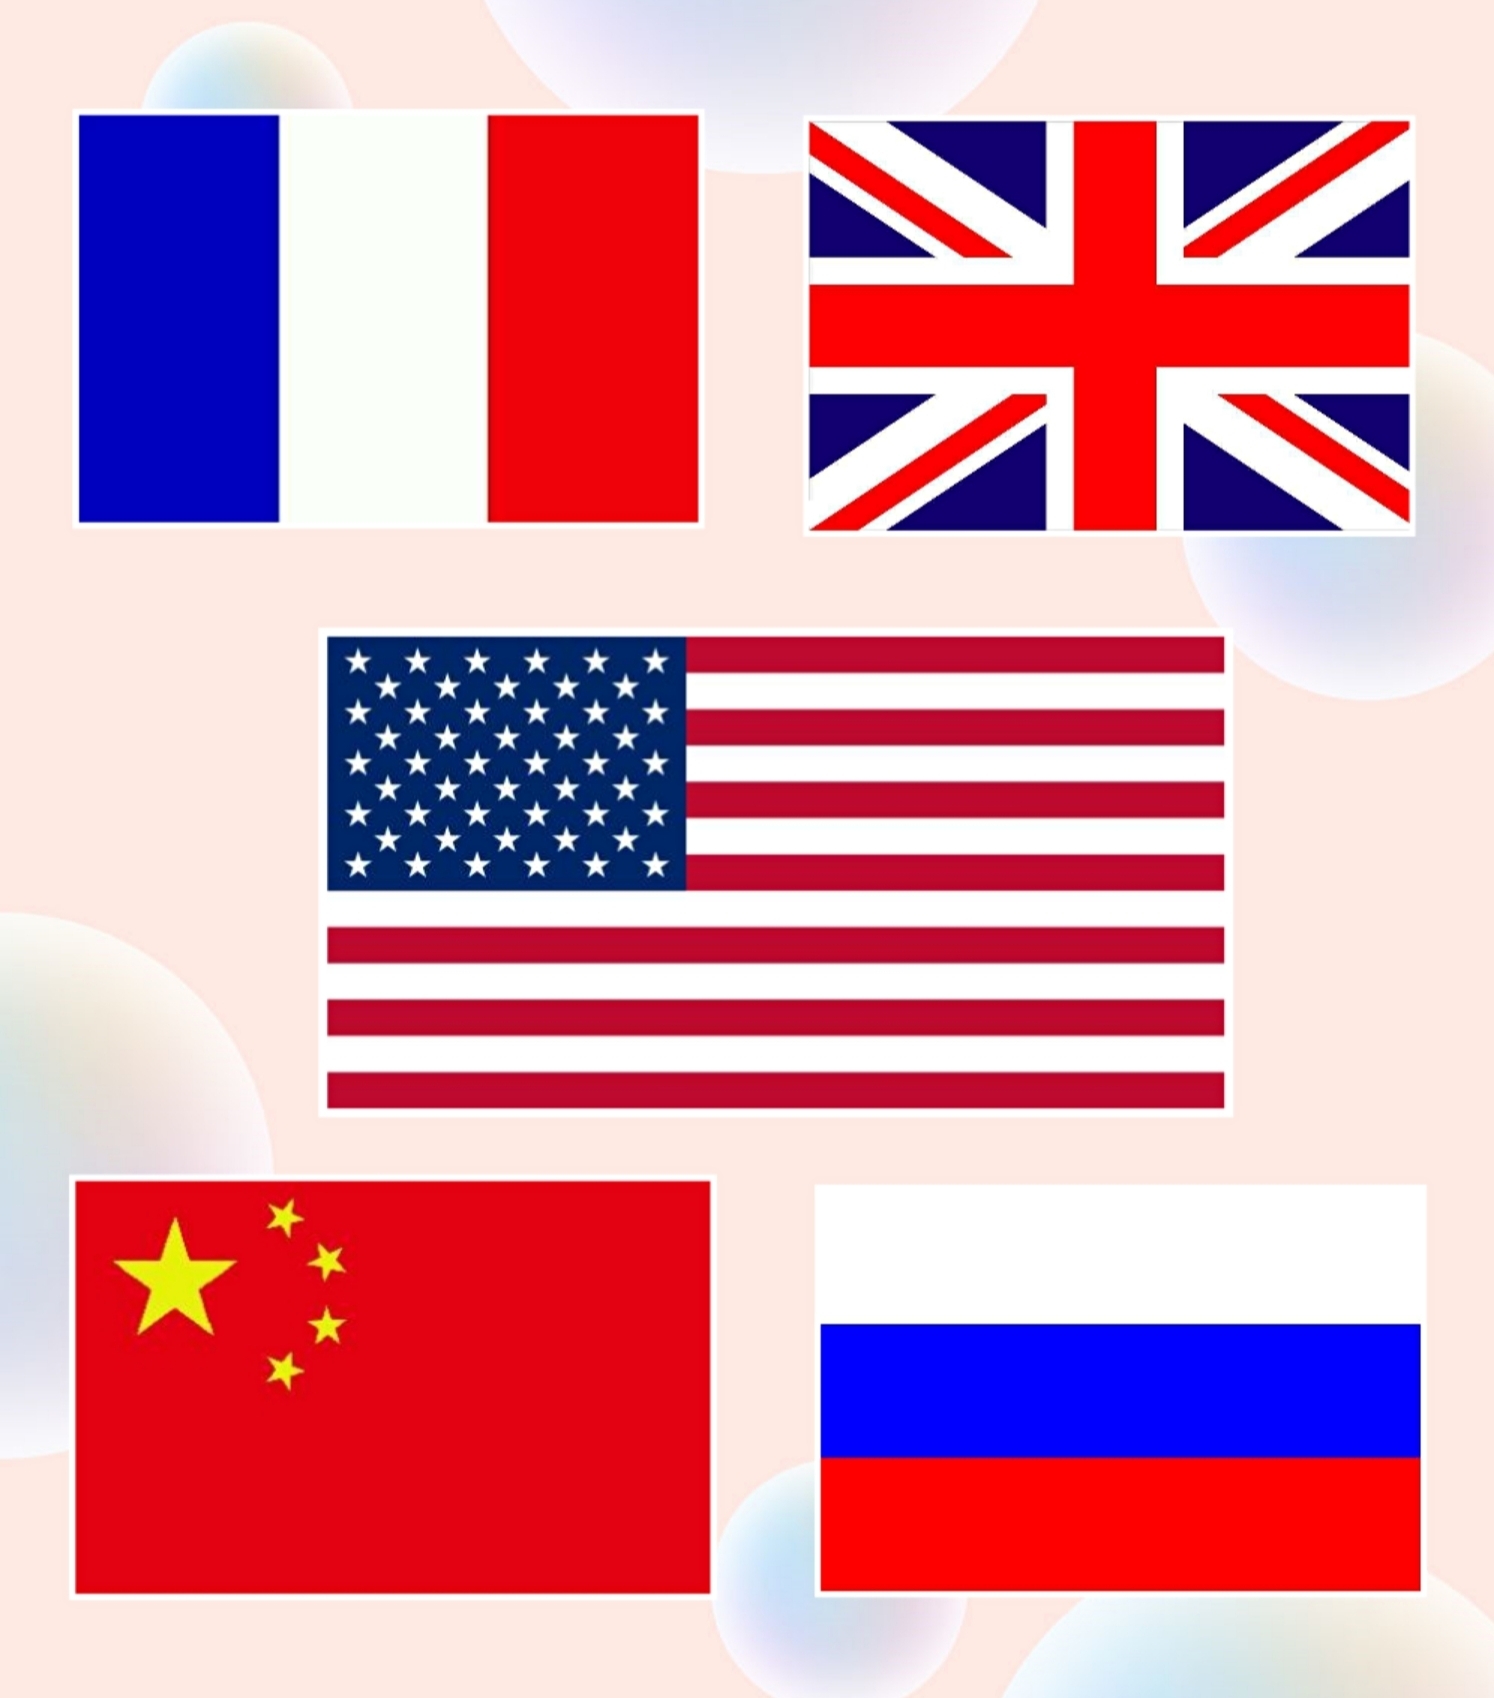 上合组织成员国国旗图片